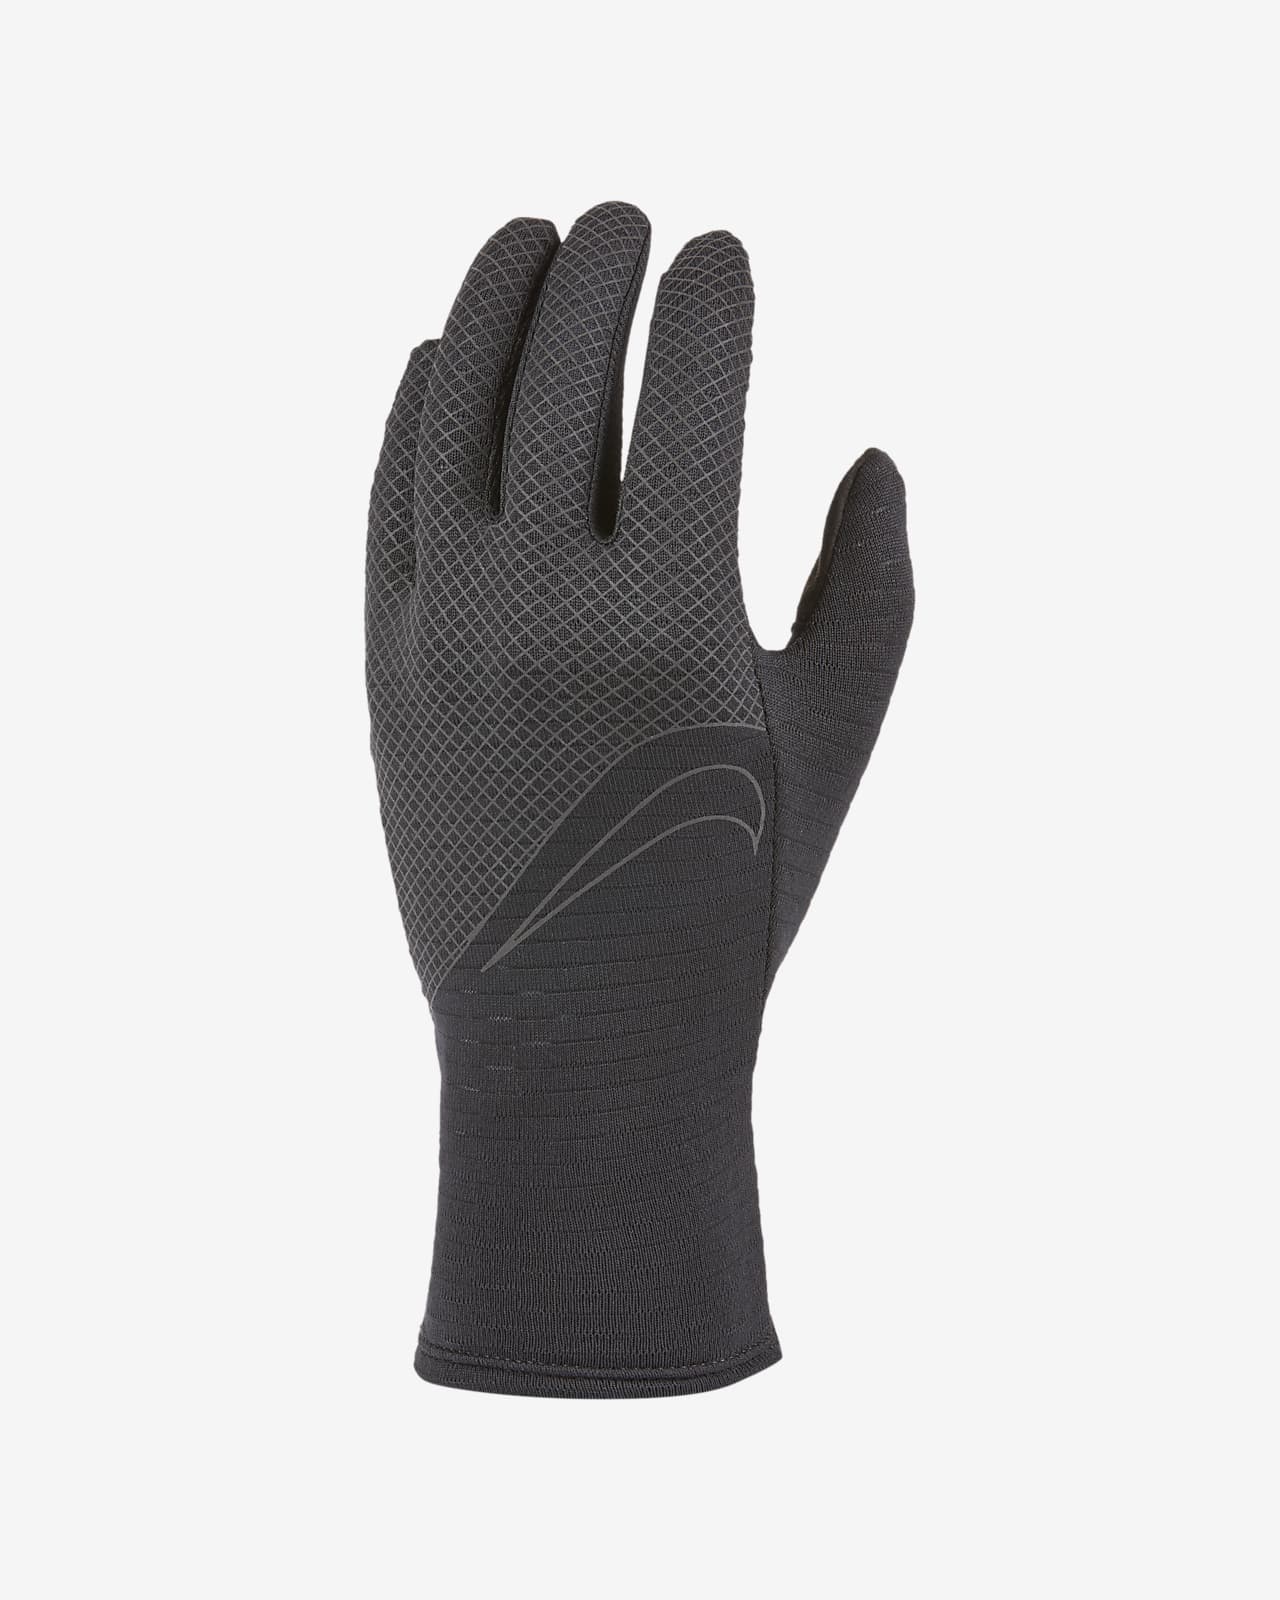 Nike Sphere 360 Women's Running Gloves. Nike LU